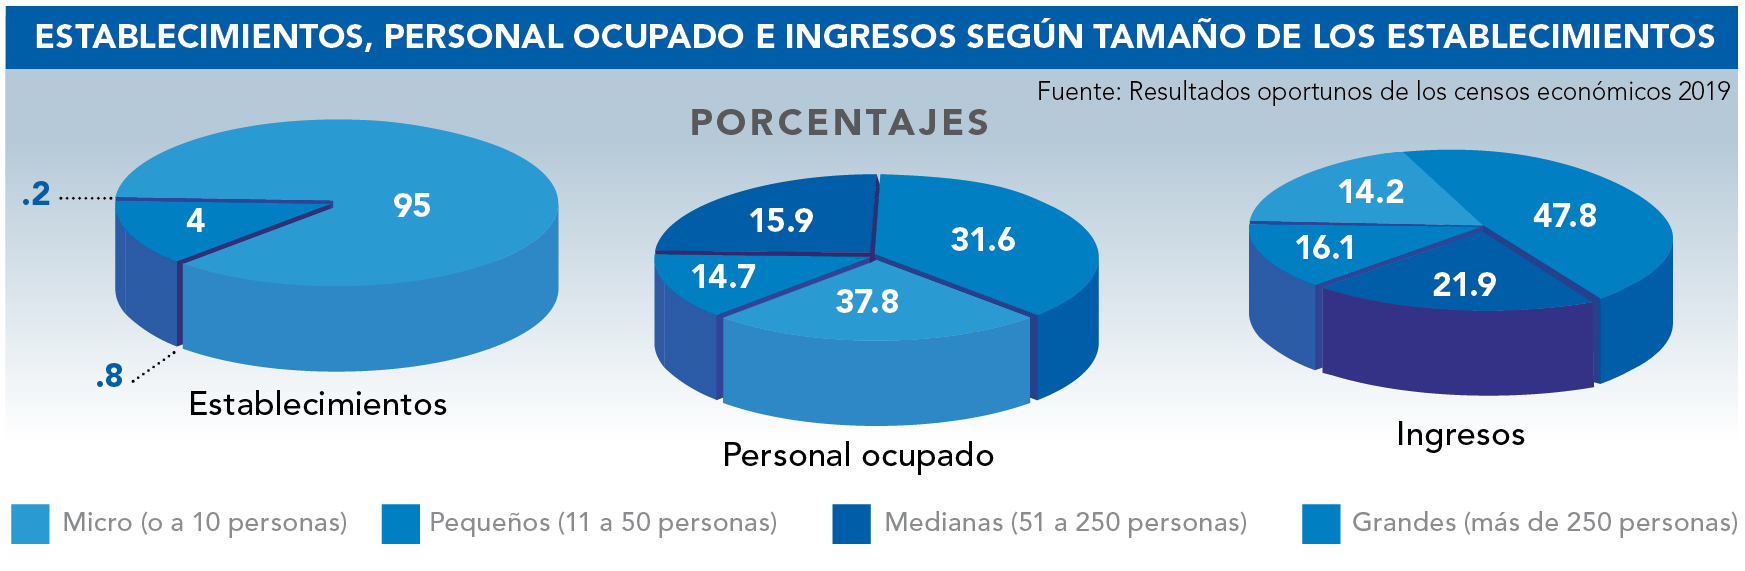 Micro, pequeñas y medianas empresas generan el 52.2% de ingresos en México